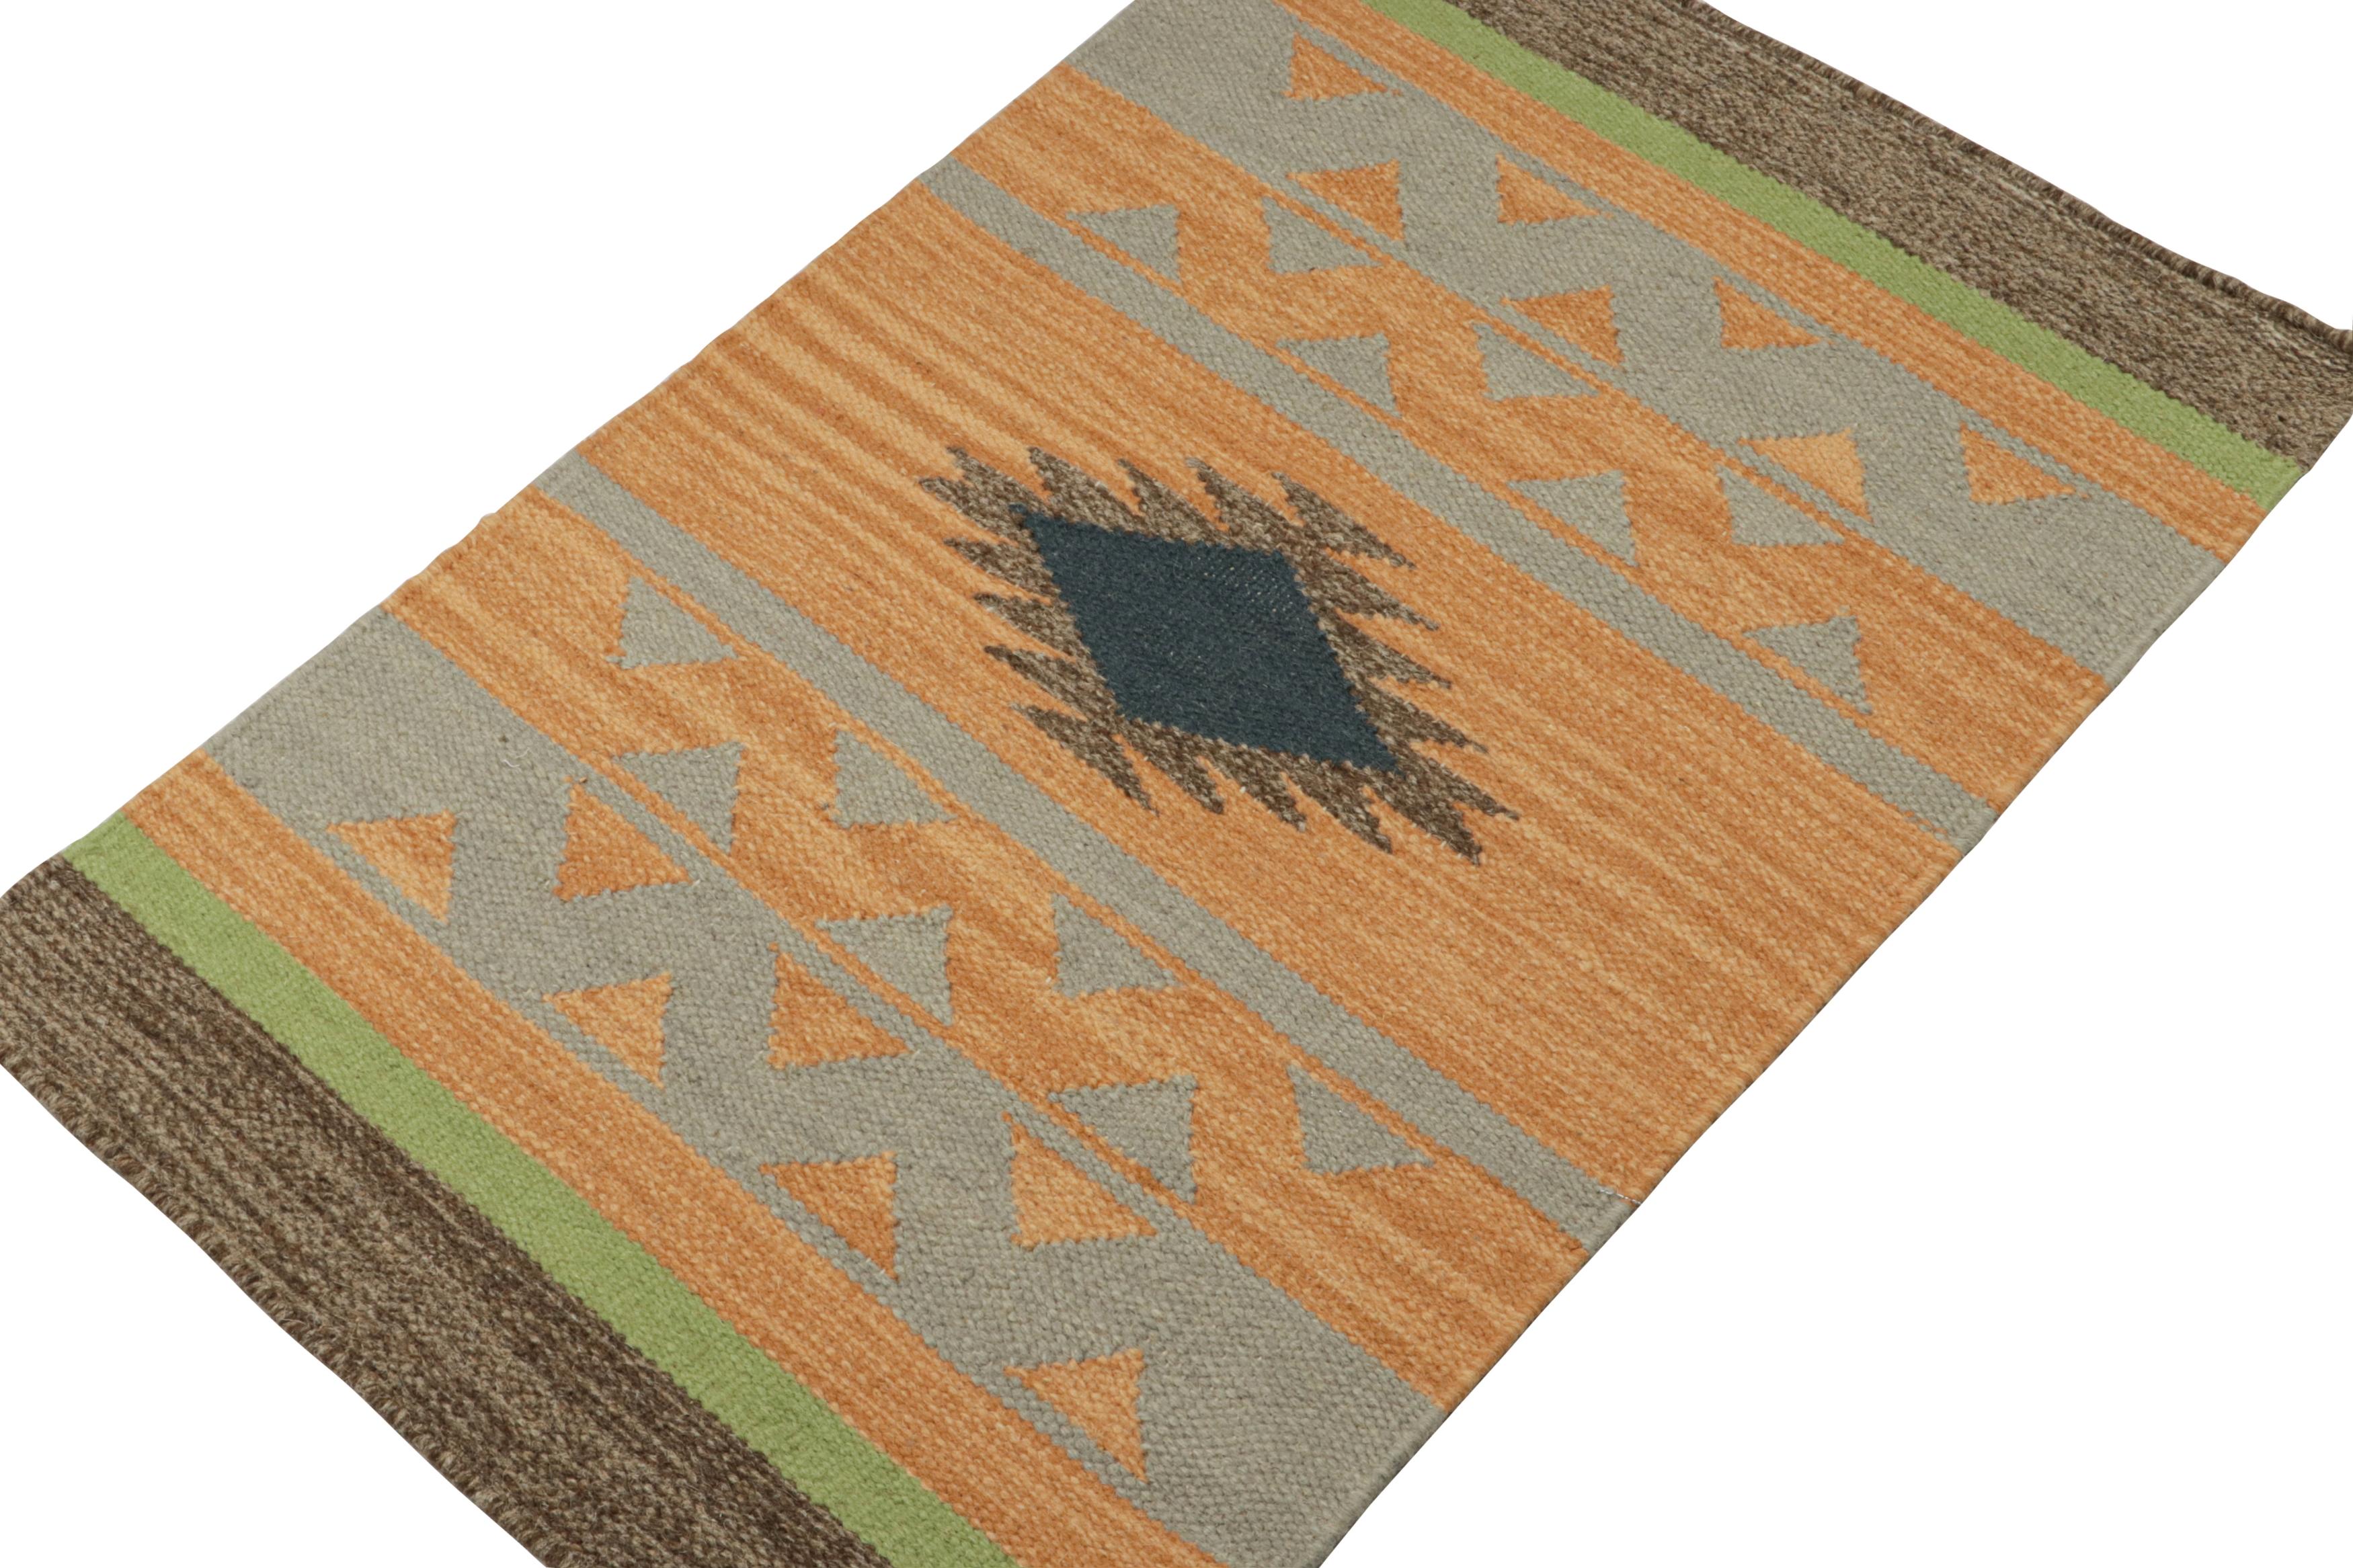 Inspiriert von Stammeskelims, ist dieses 2x3 Stück eine lebendige Ergänzung der Flachgewebekollektion von Rug & Kilim.  

Über das Design: 

Dieser moderne Kelim aus handgewebter Wolle trägt graue, schwarze, braune und grüne geometrische Muster auf